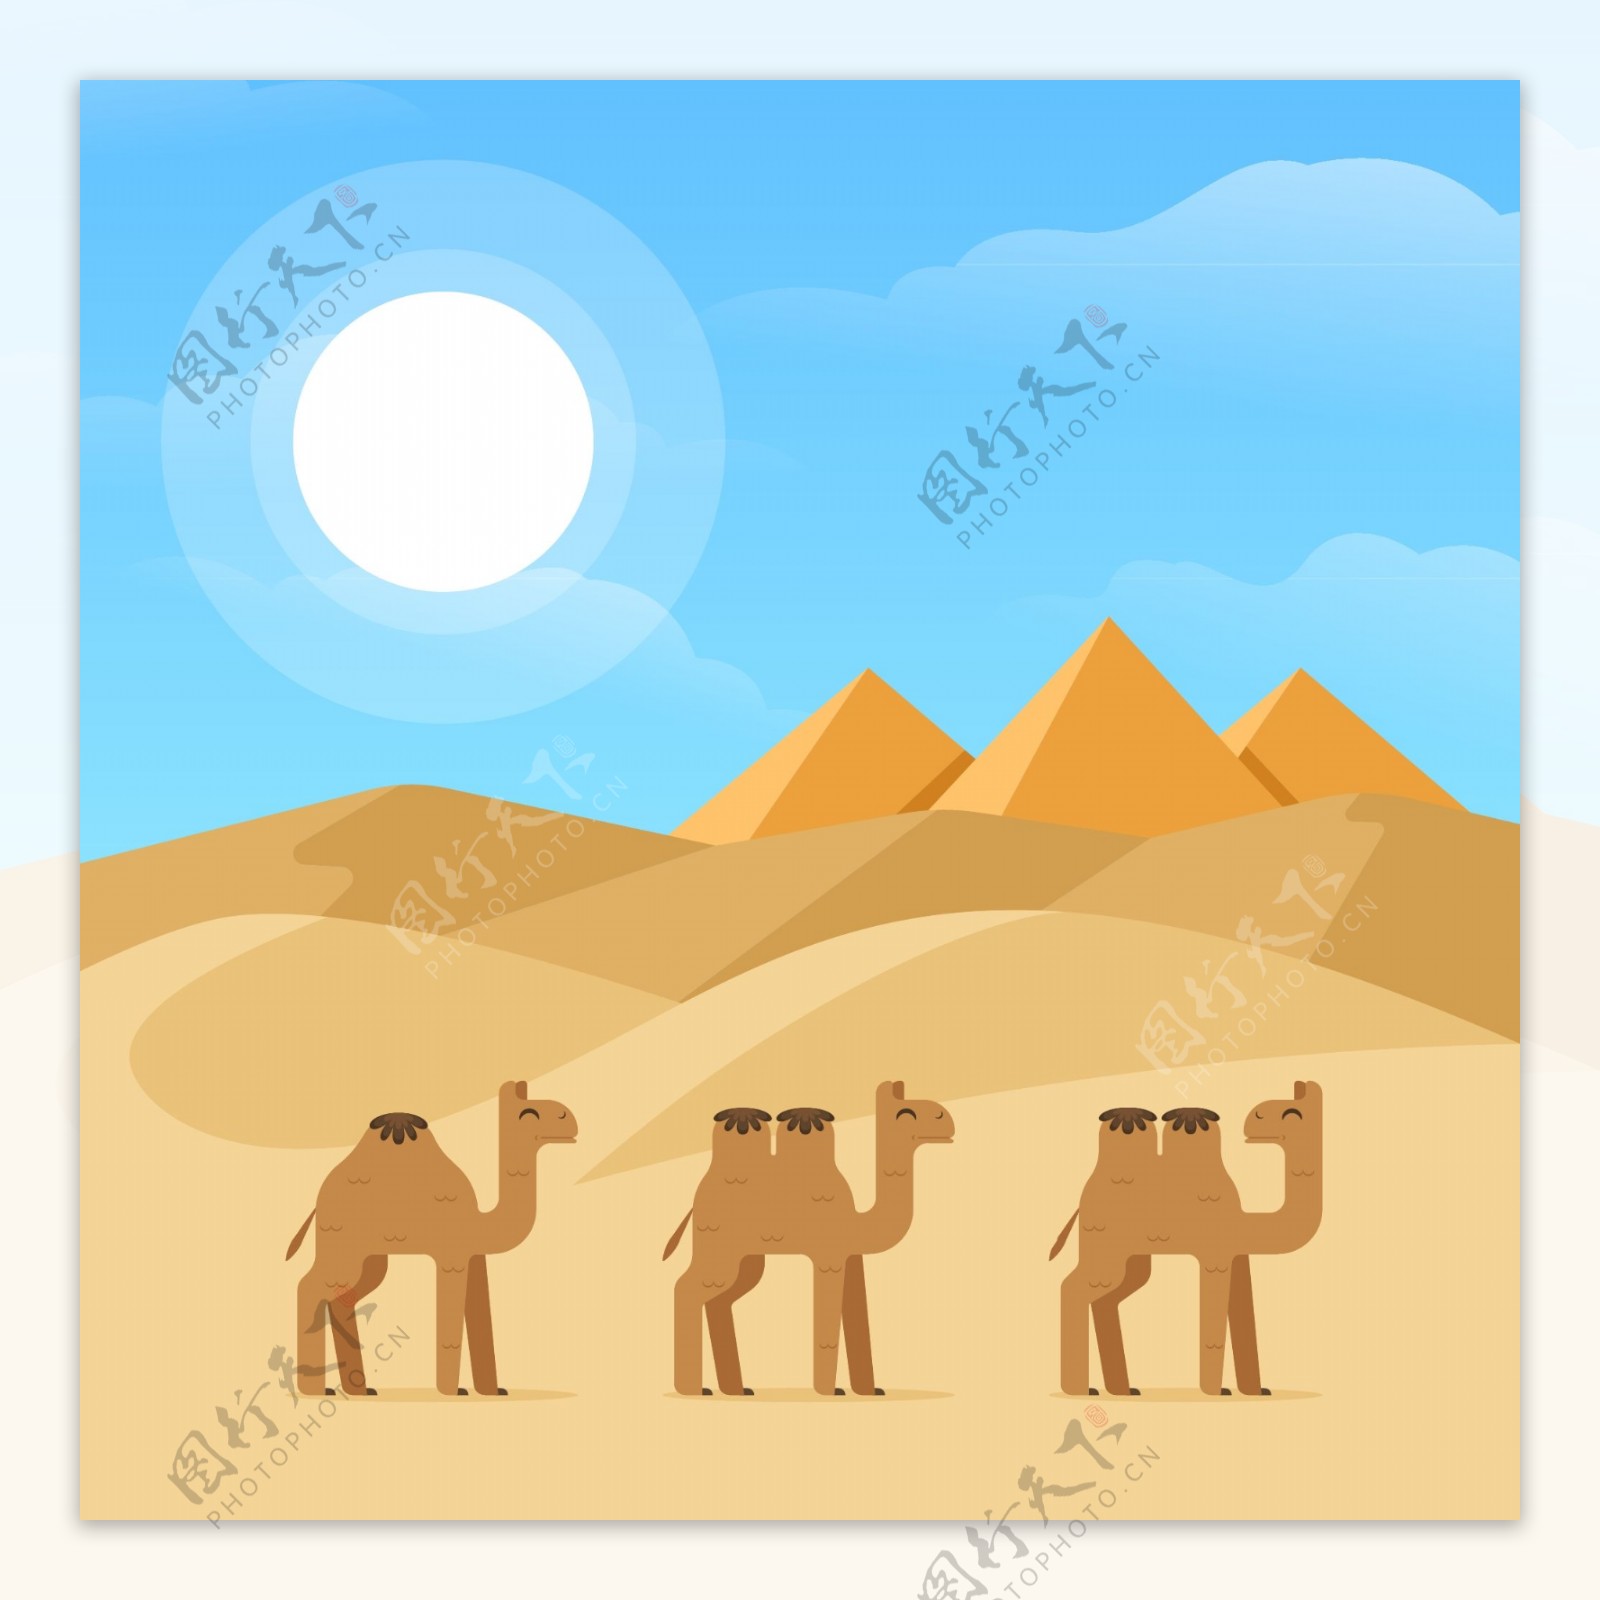 沙漠骆驼一带一路视频素材,延时摄影视频素材下载,高清1920X1080视频素材下载,凌点视频素材网,编号:92763